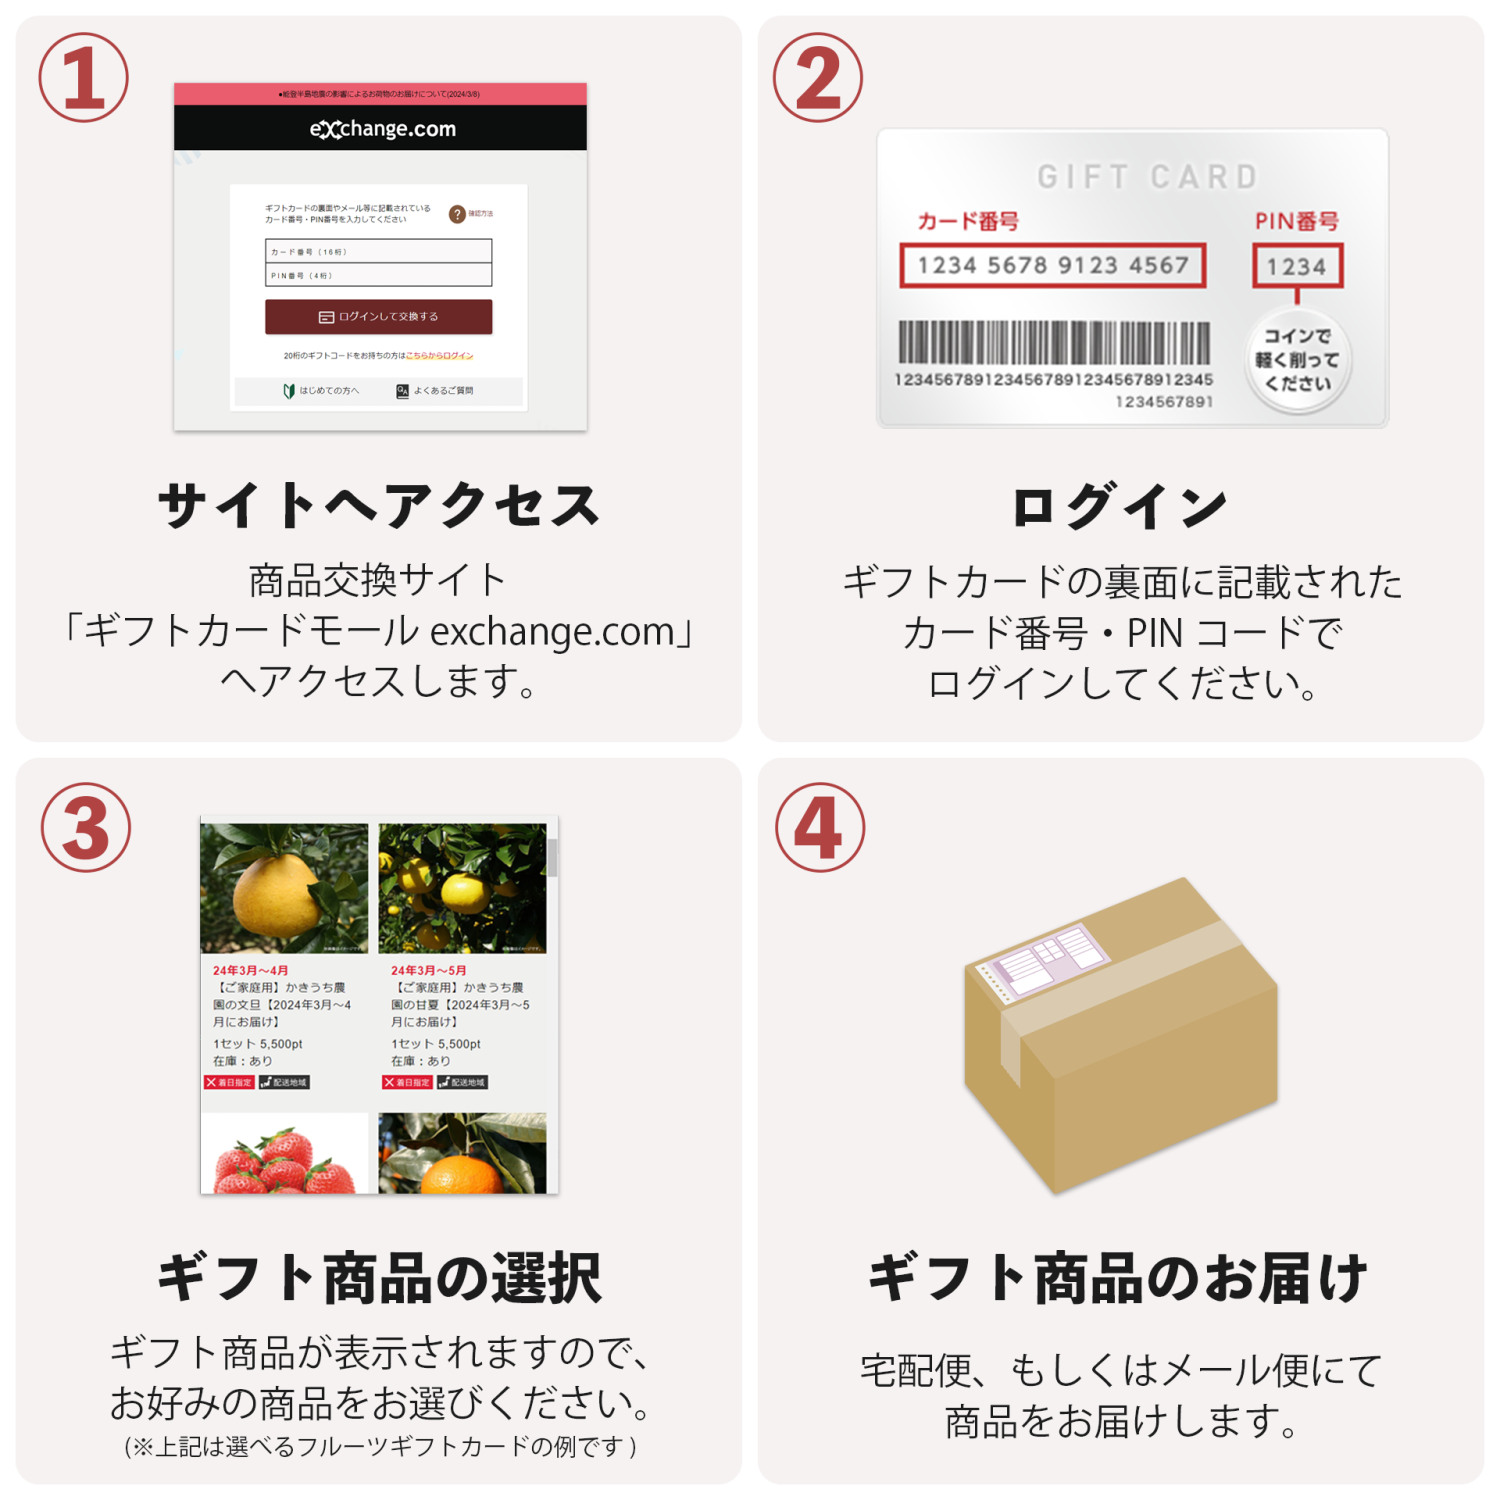 【伊藤忠食品】選べるご当地麺ギフトカード 写真3